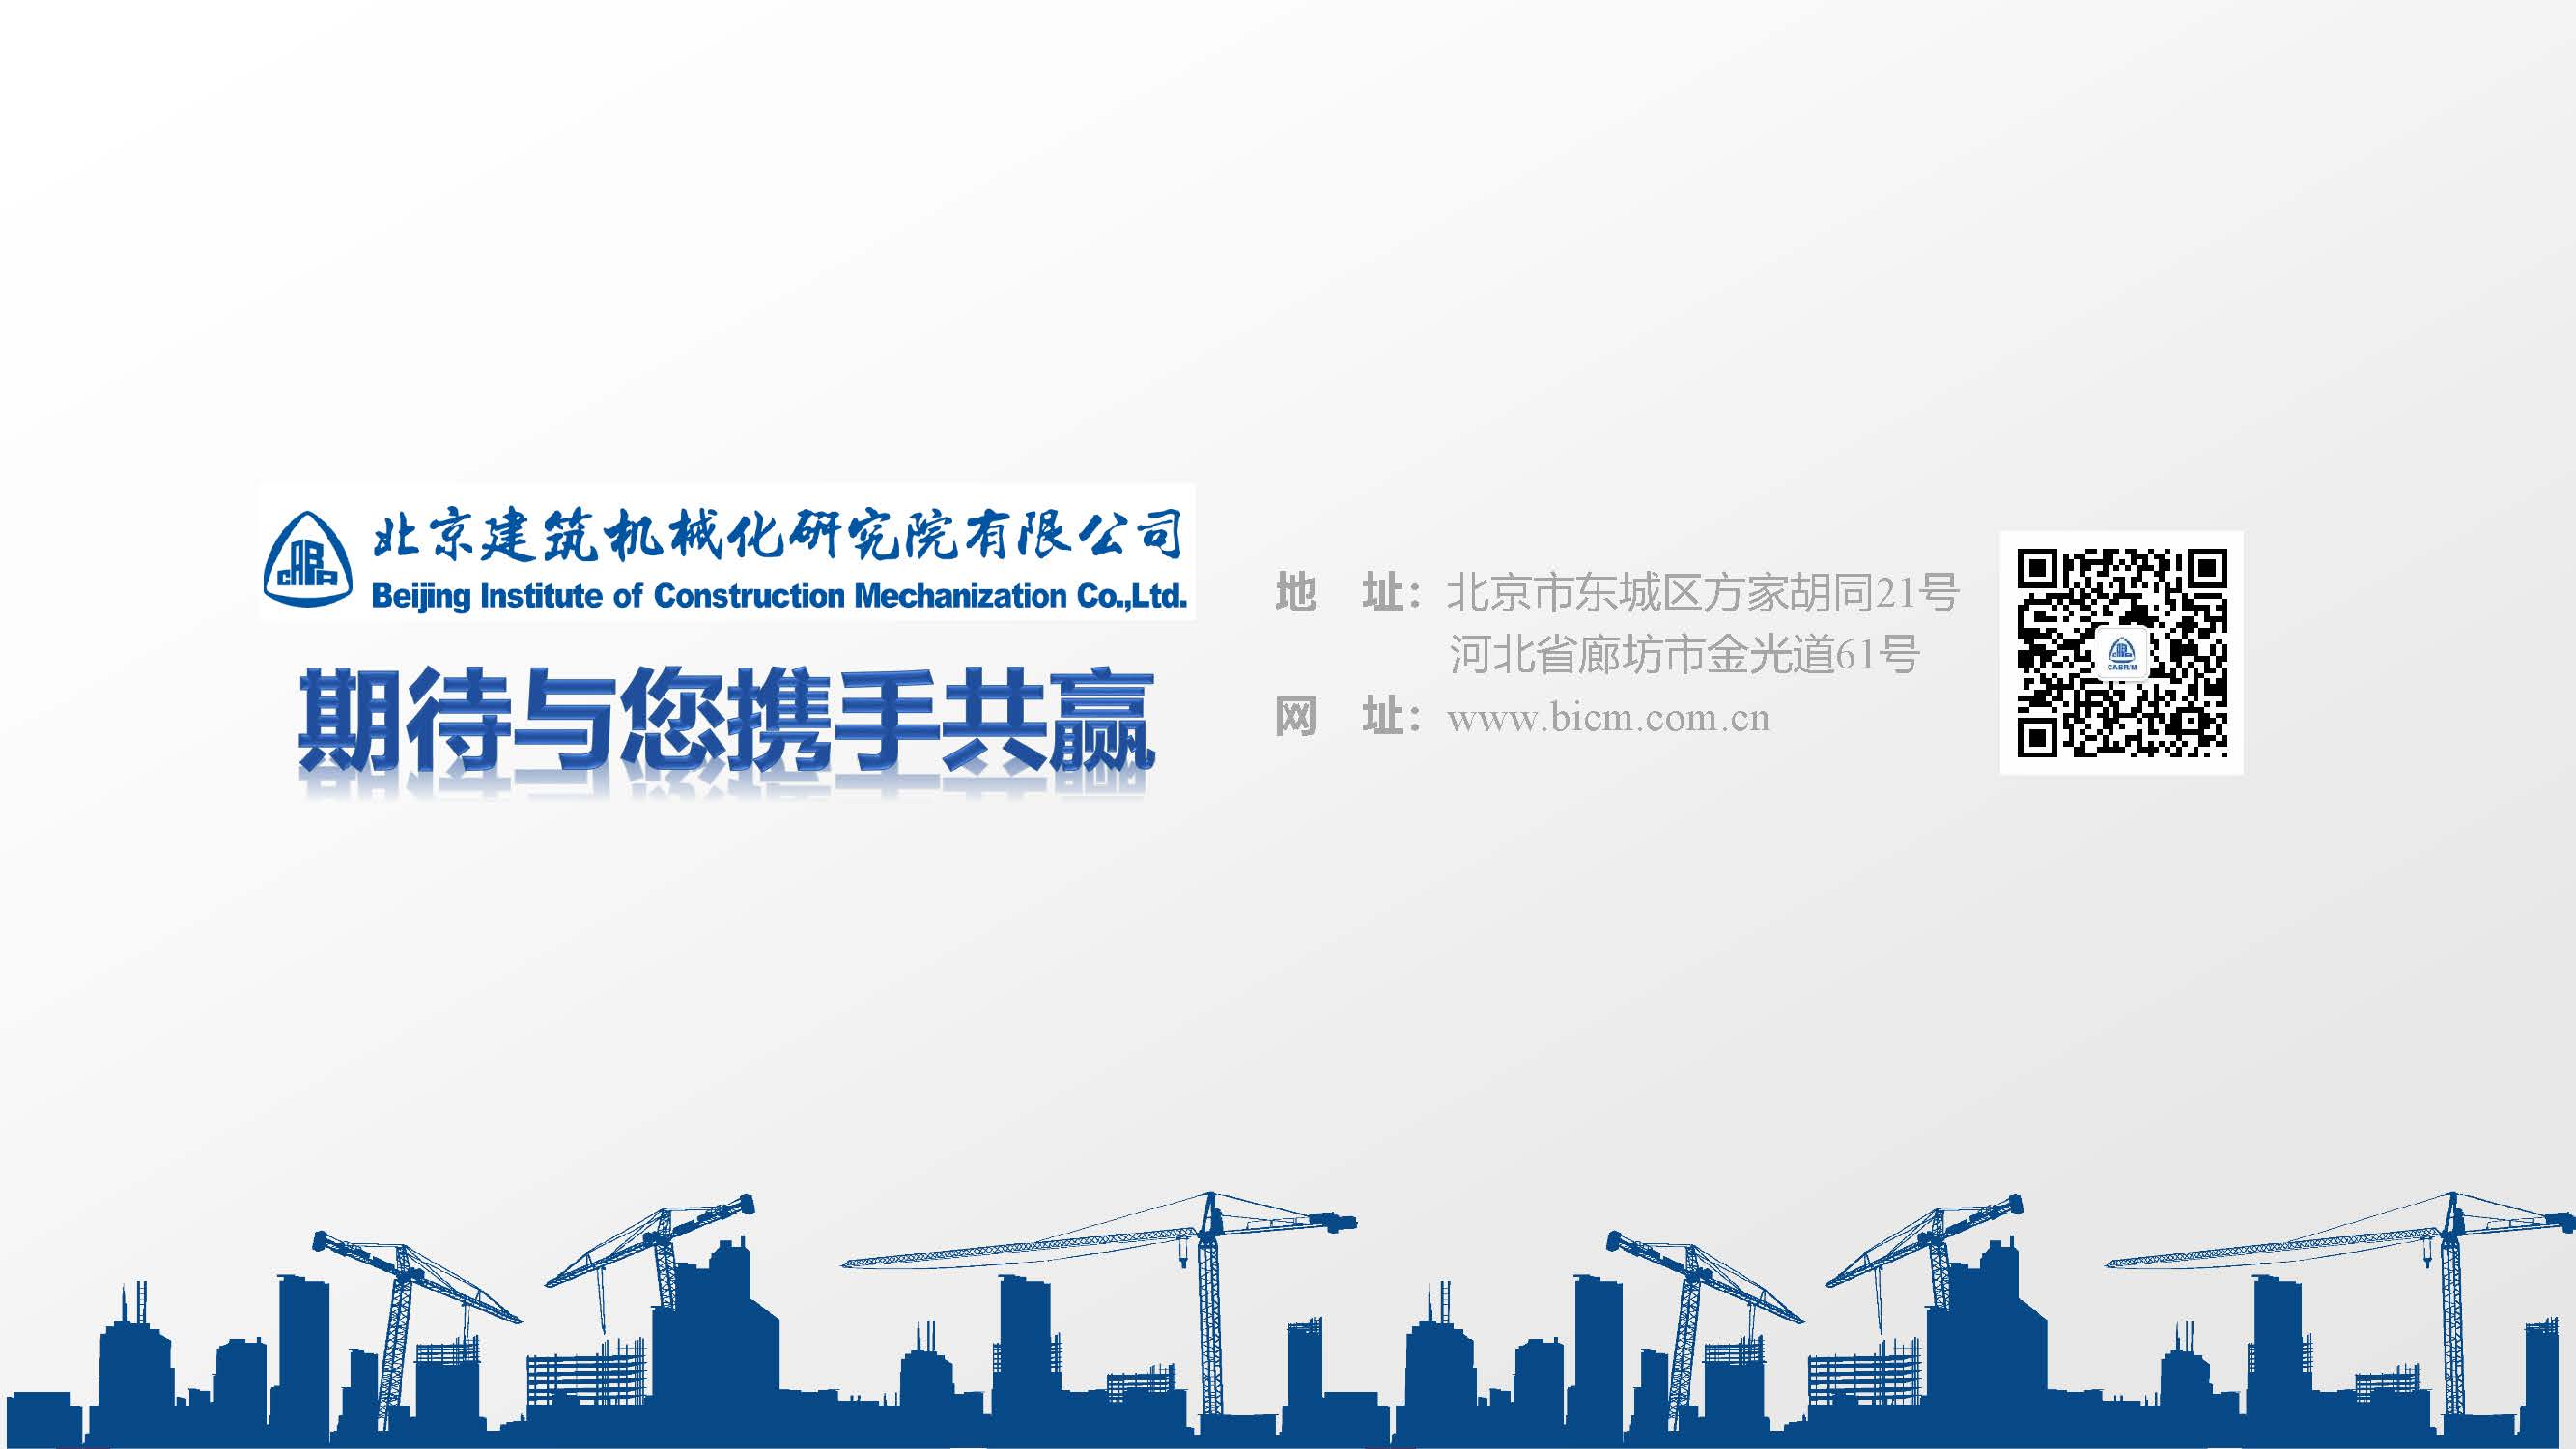  北京建筑机械化研究院有限公司